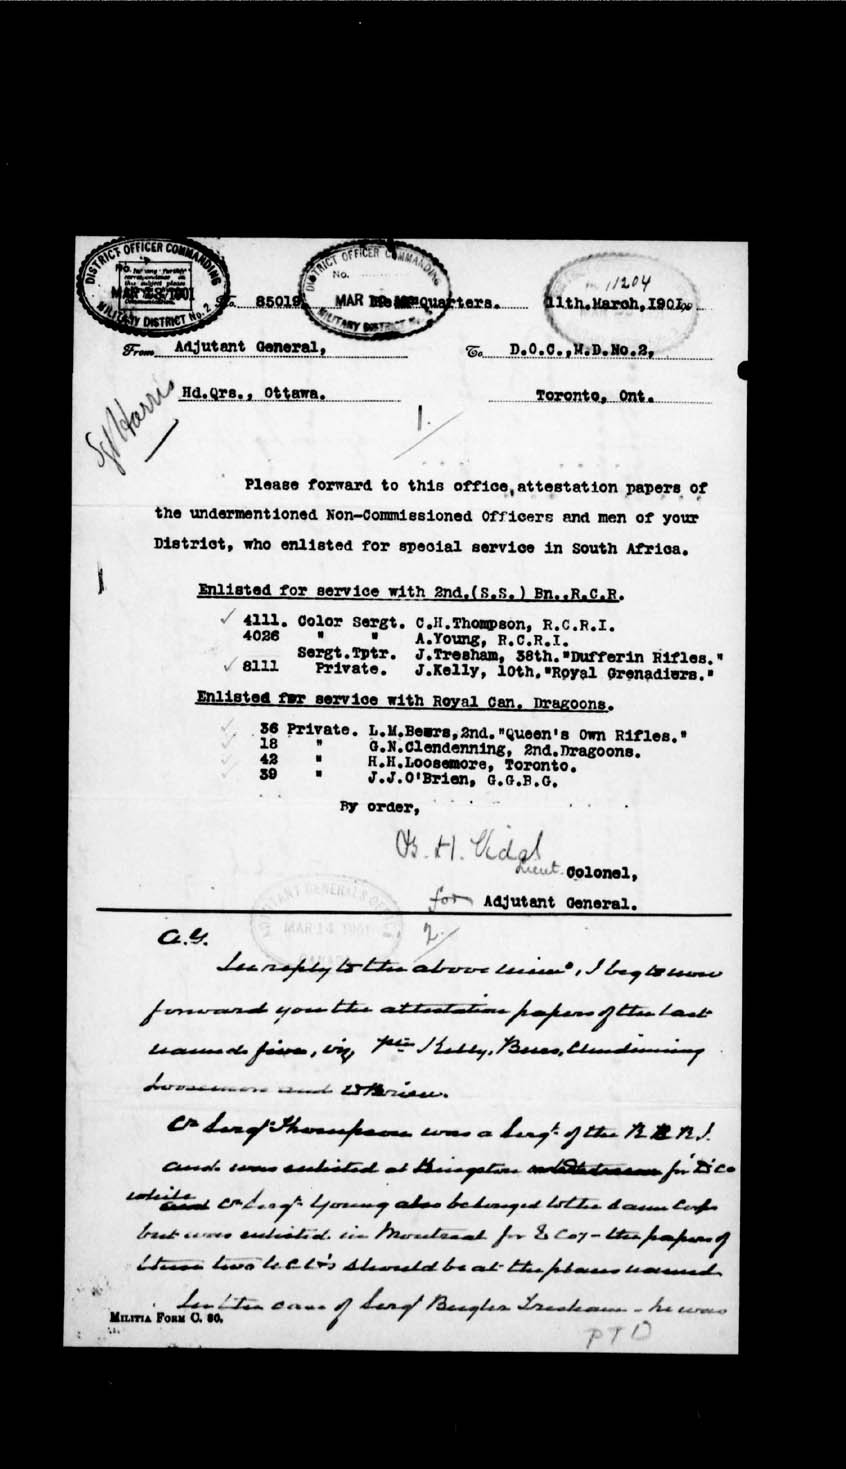 Page numérisé de Boer War pour l'image numéro: e002204732